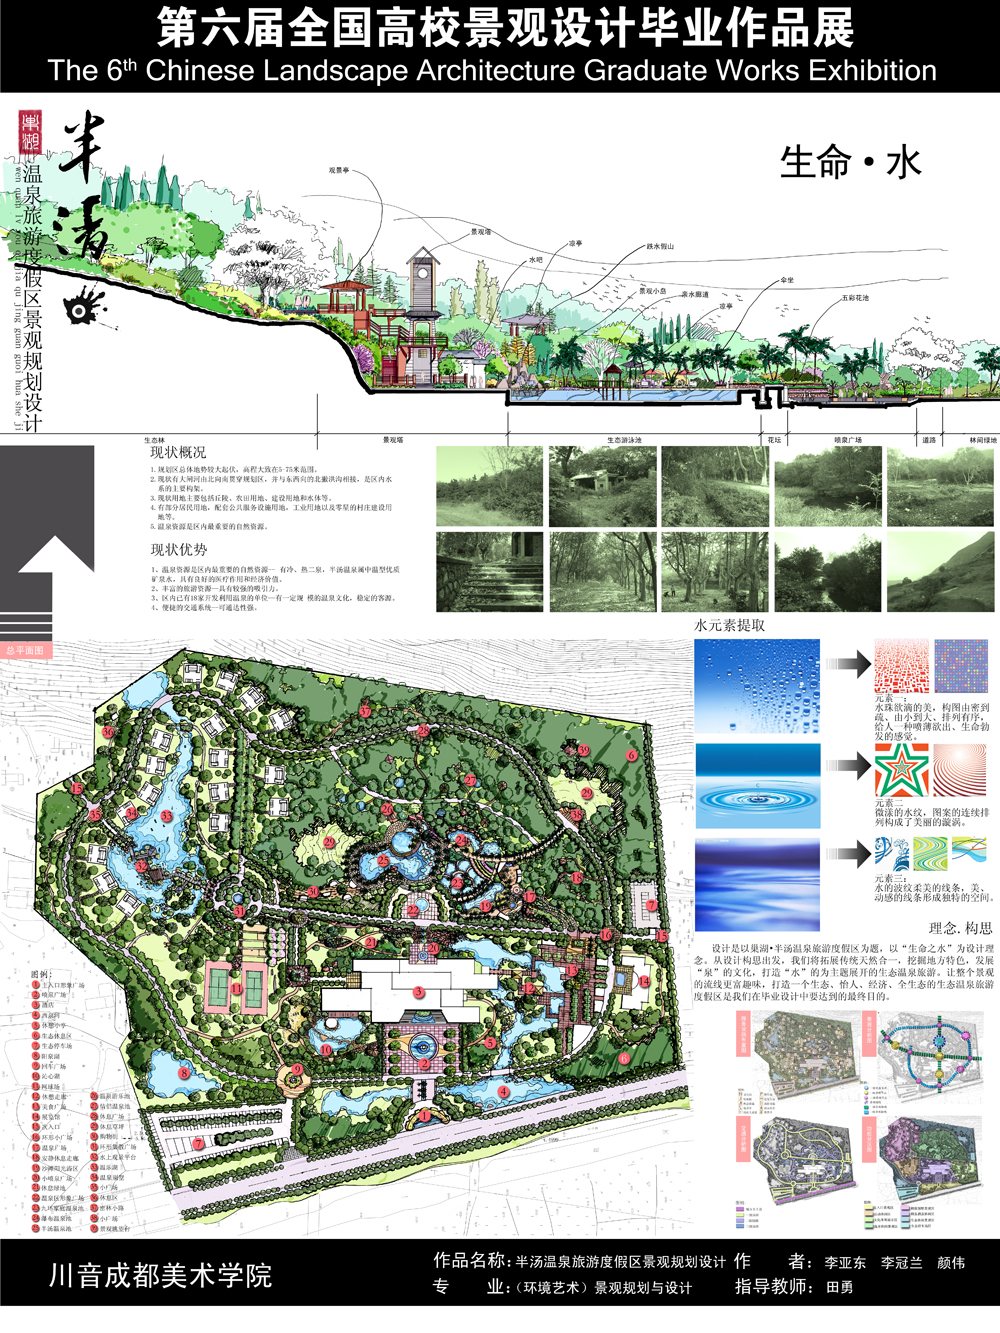 半汤温泉旅游度假区景观规划设计-1